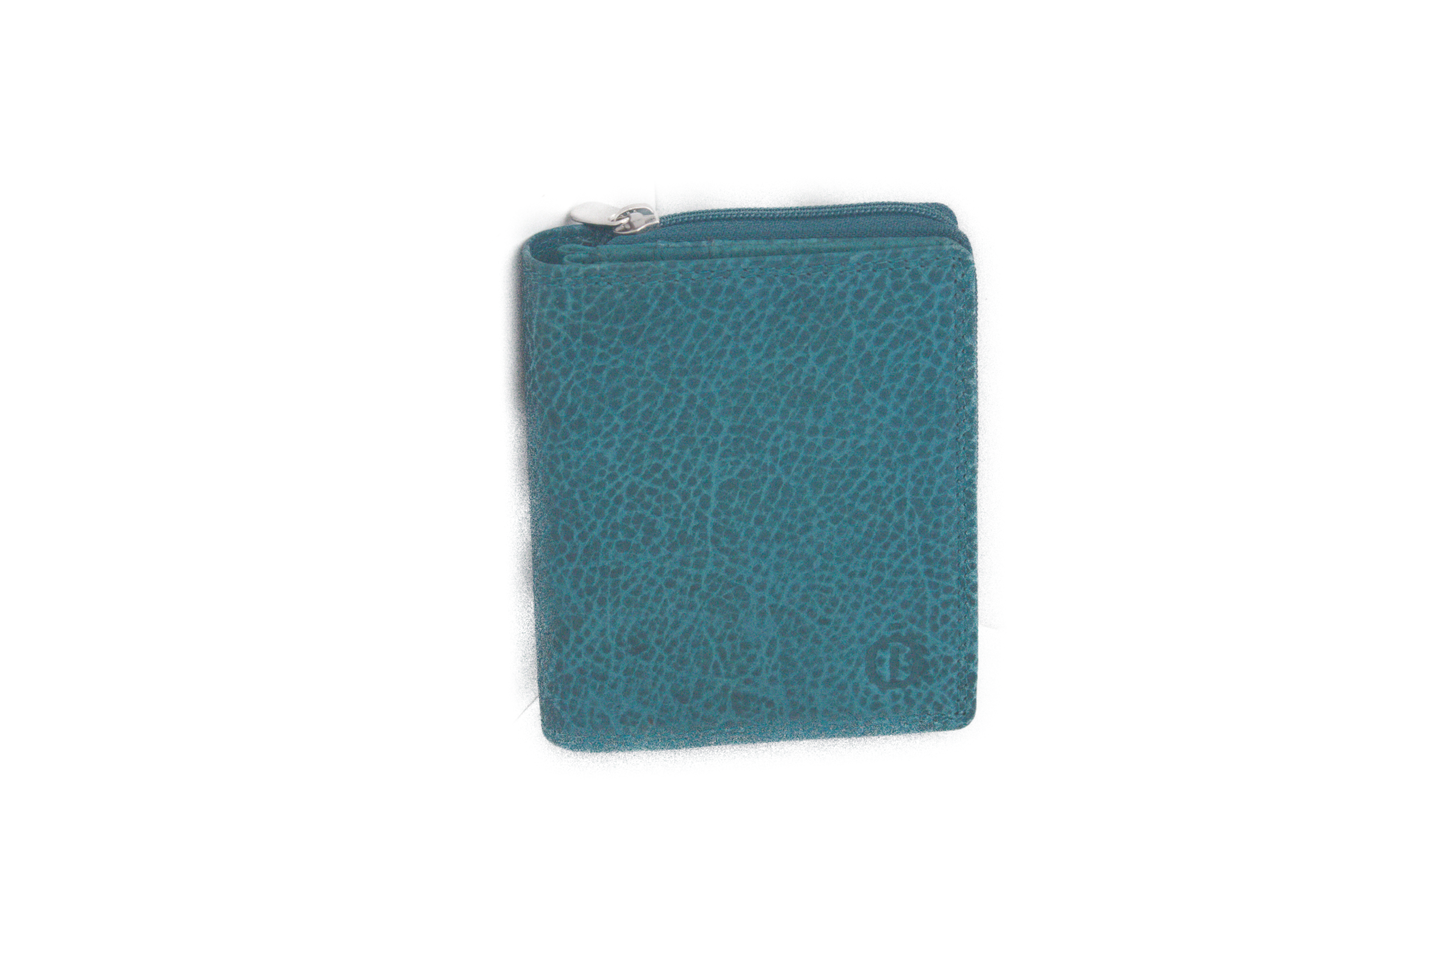 OI Rits portemonnee in 8 kleuren 293 hemels blauw